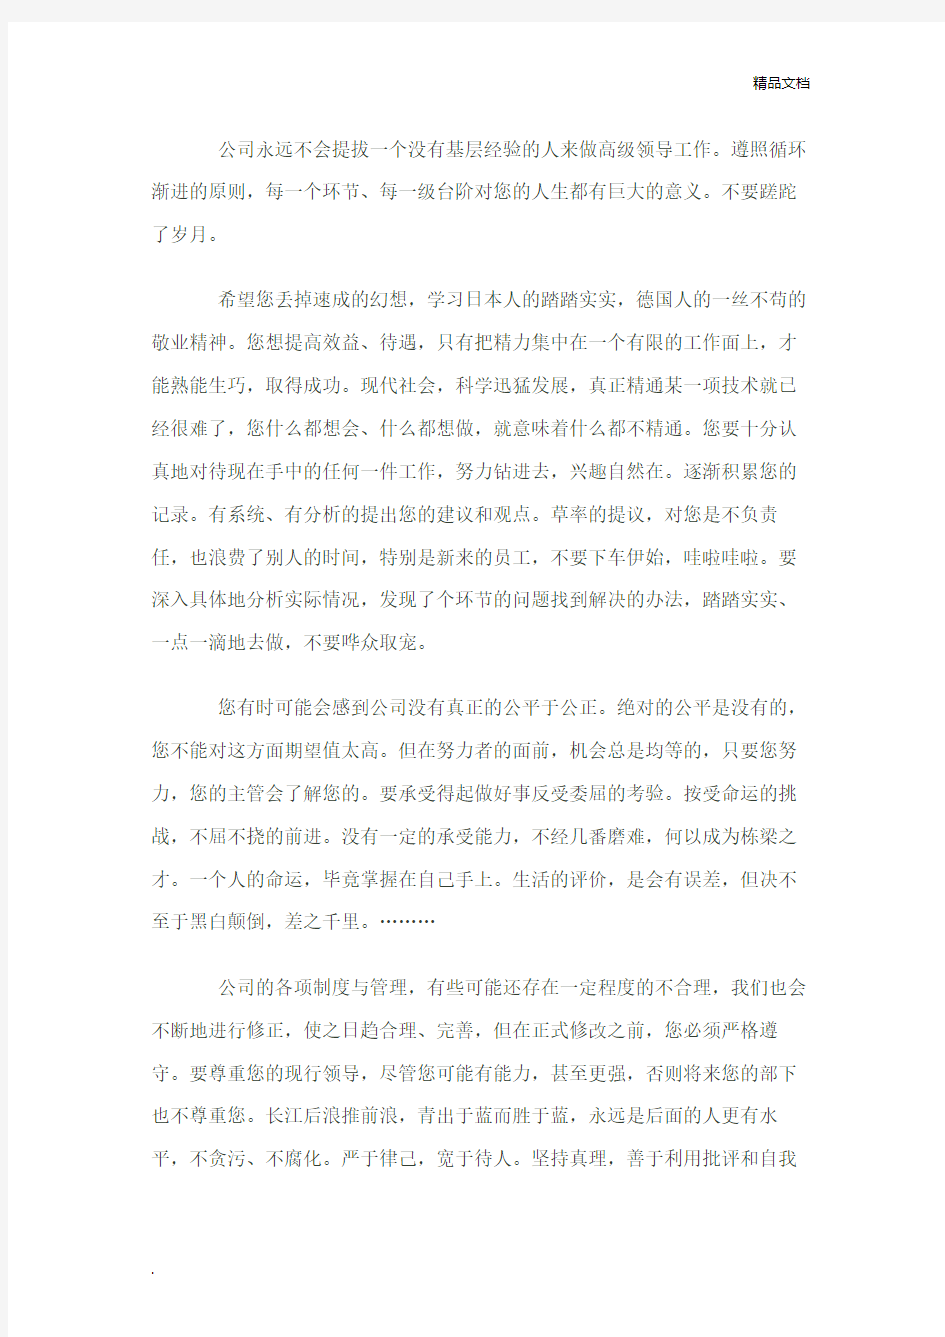 华为集团总裁任正非致新员工的一封信